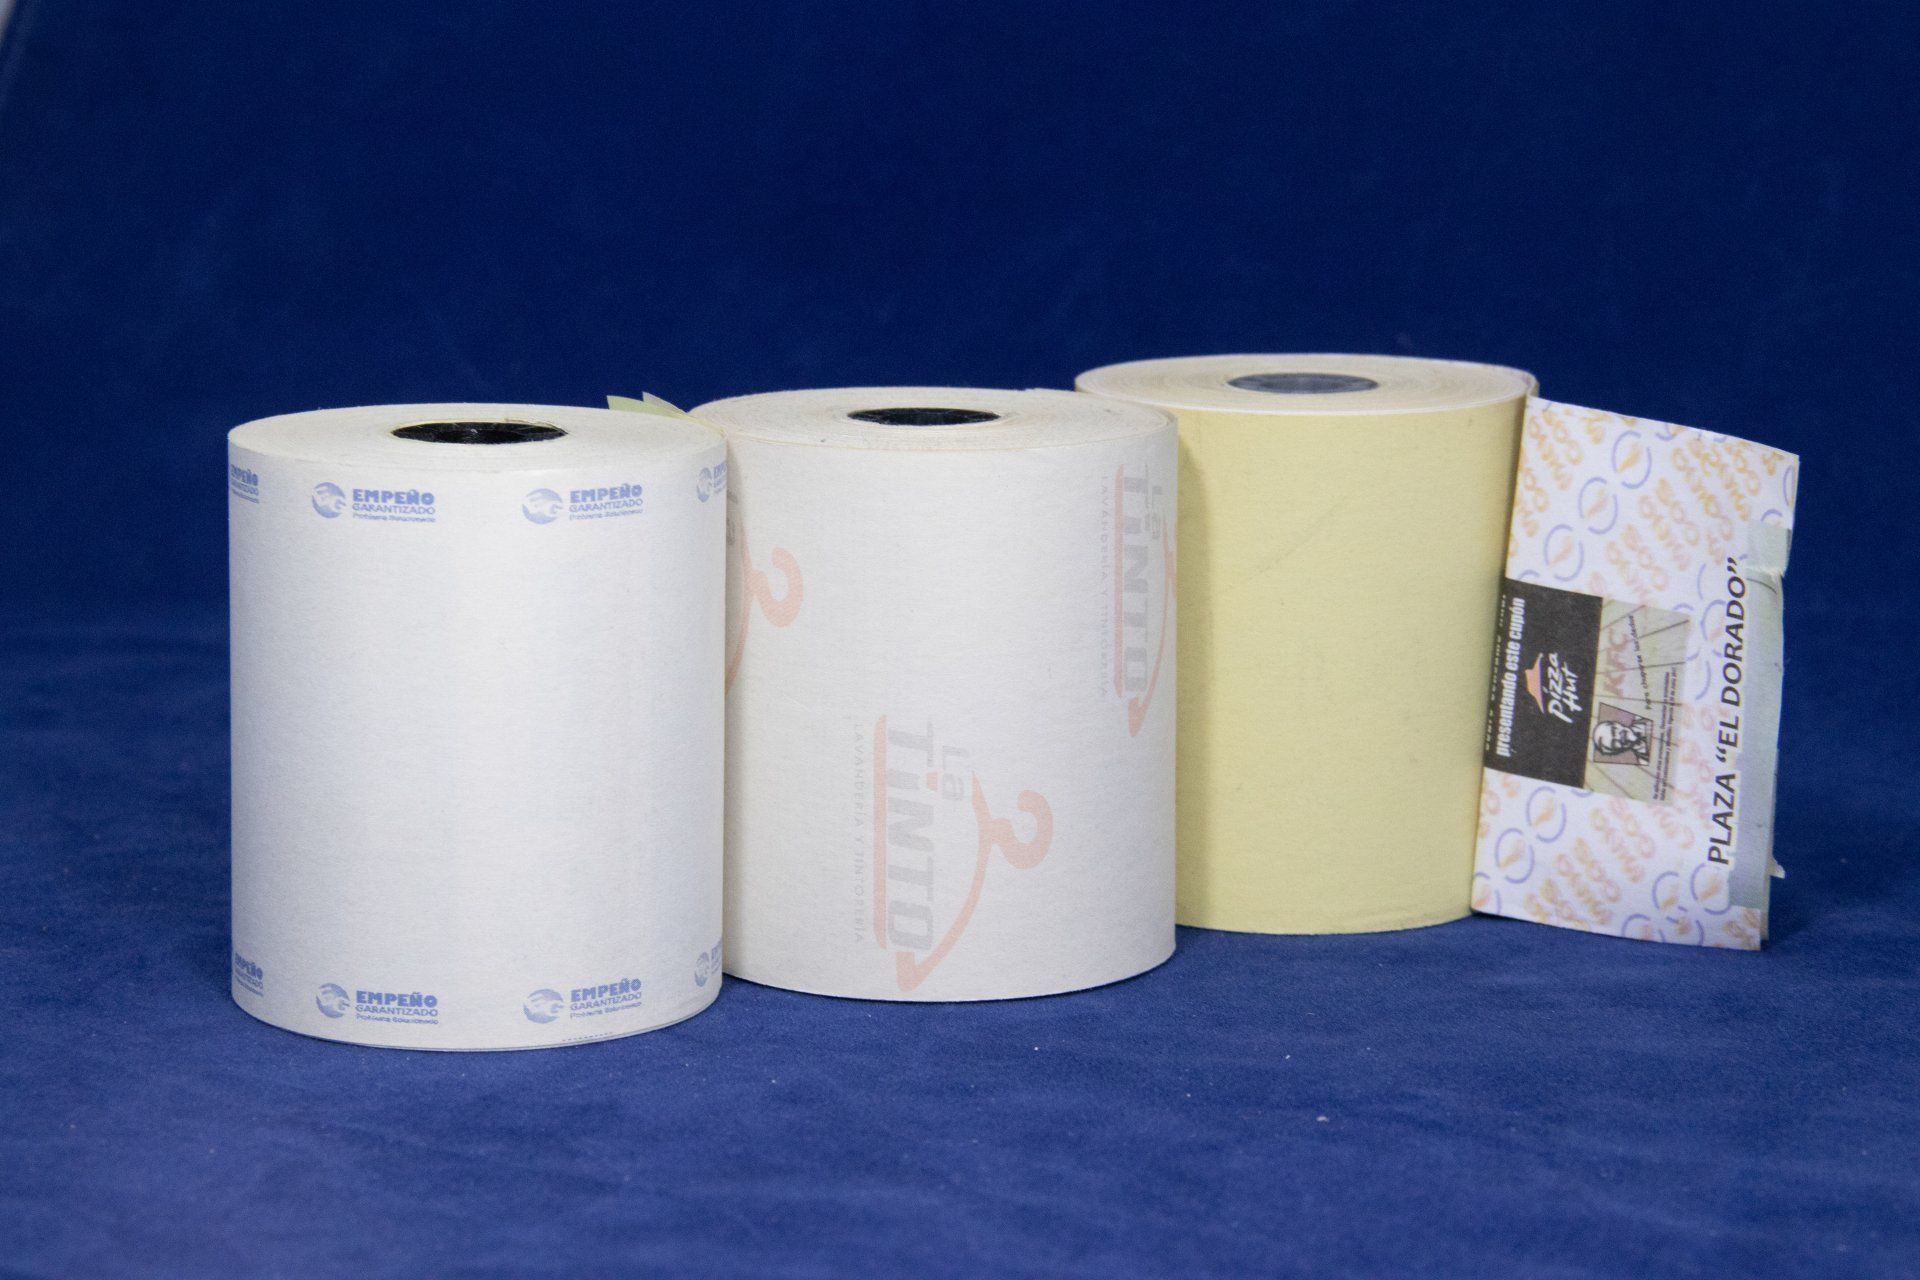 Rollos de papel térmico: qué son y sus usos más comunes